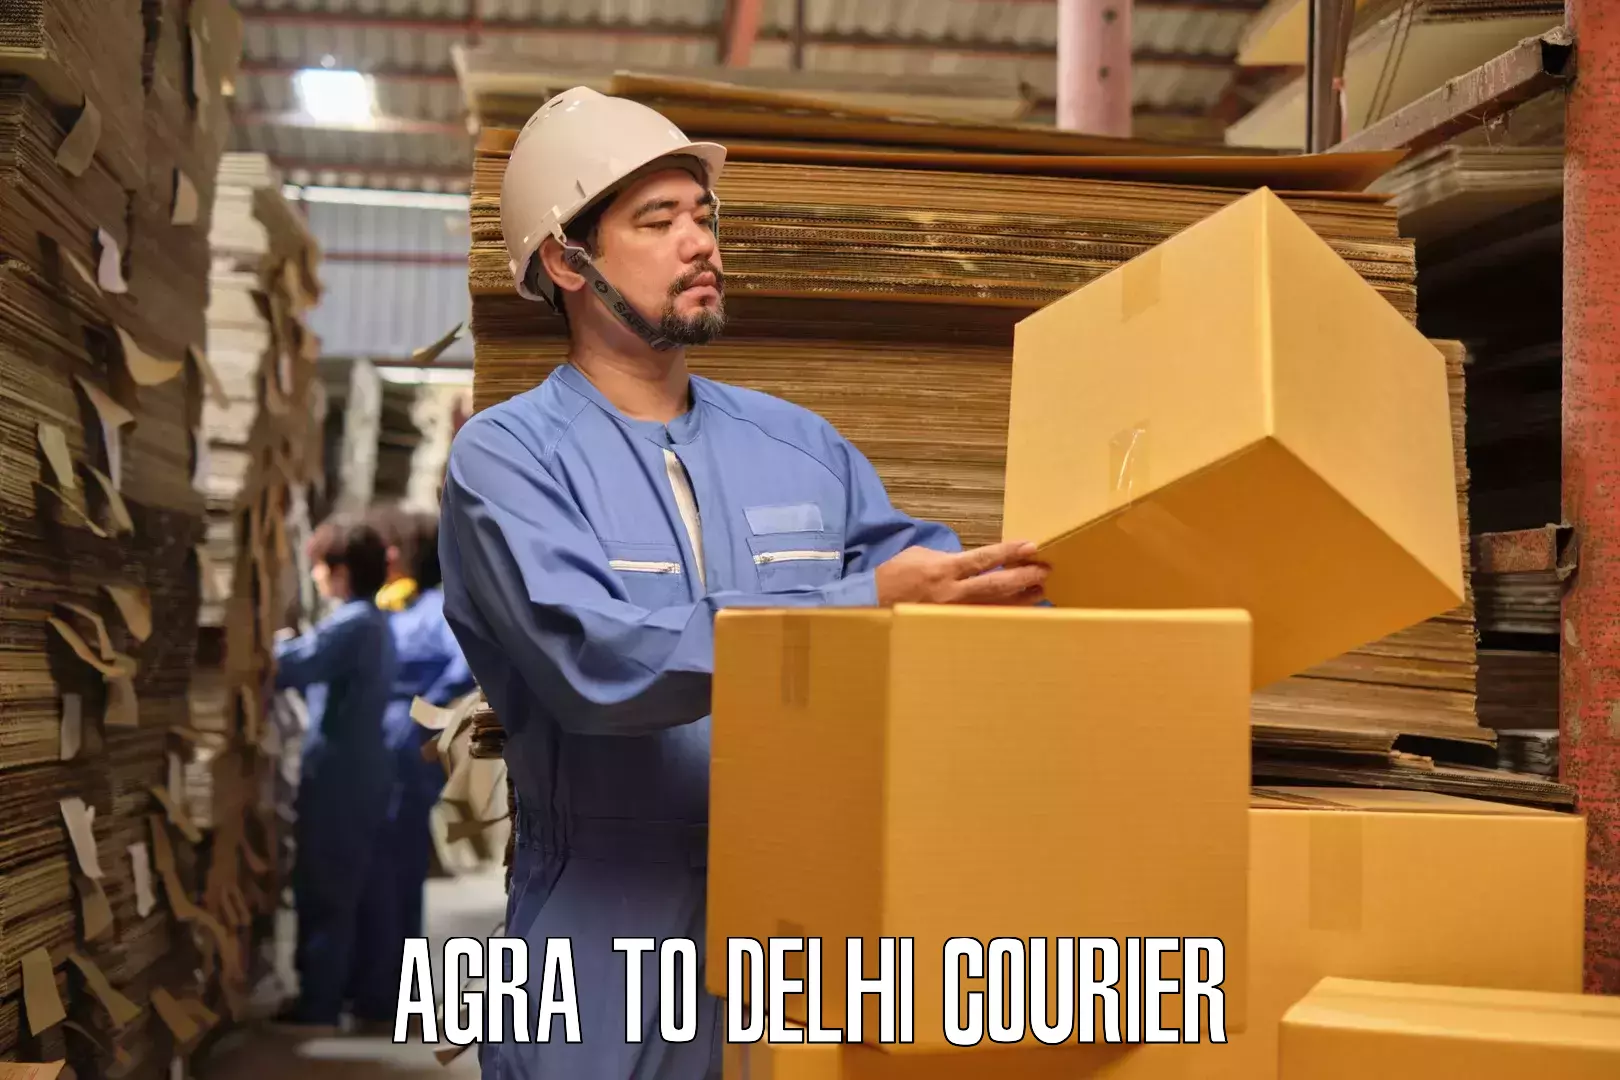 Moving and storage services Agra to Jamia Millia Islamia New Delhi